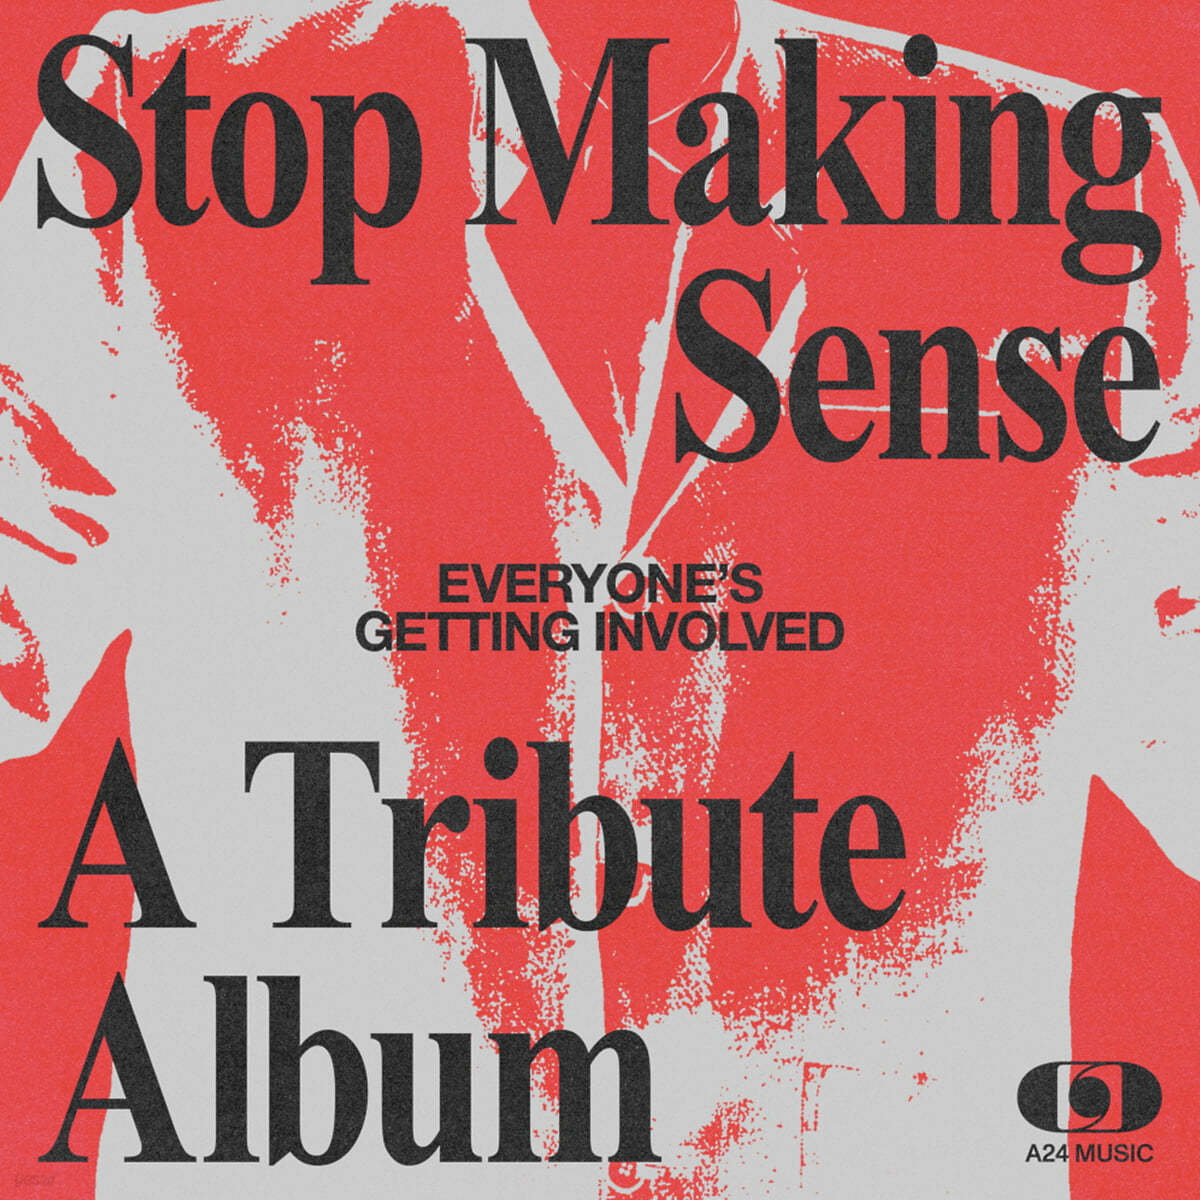 토킹 헤드 콘서트 영화 &#39;Stop Making Sense&#39; 사운드트랙 40주년 기념 헌정 앨범 (Everyone&#39;s Getting Involved) [실버 컬러 2LP]